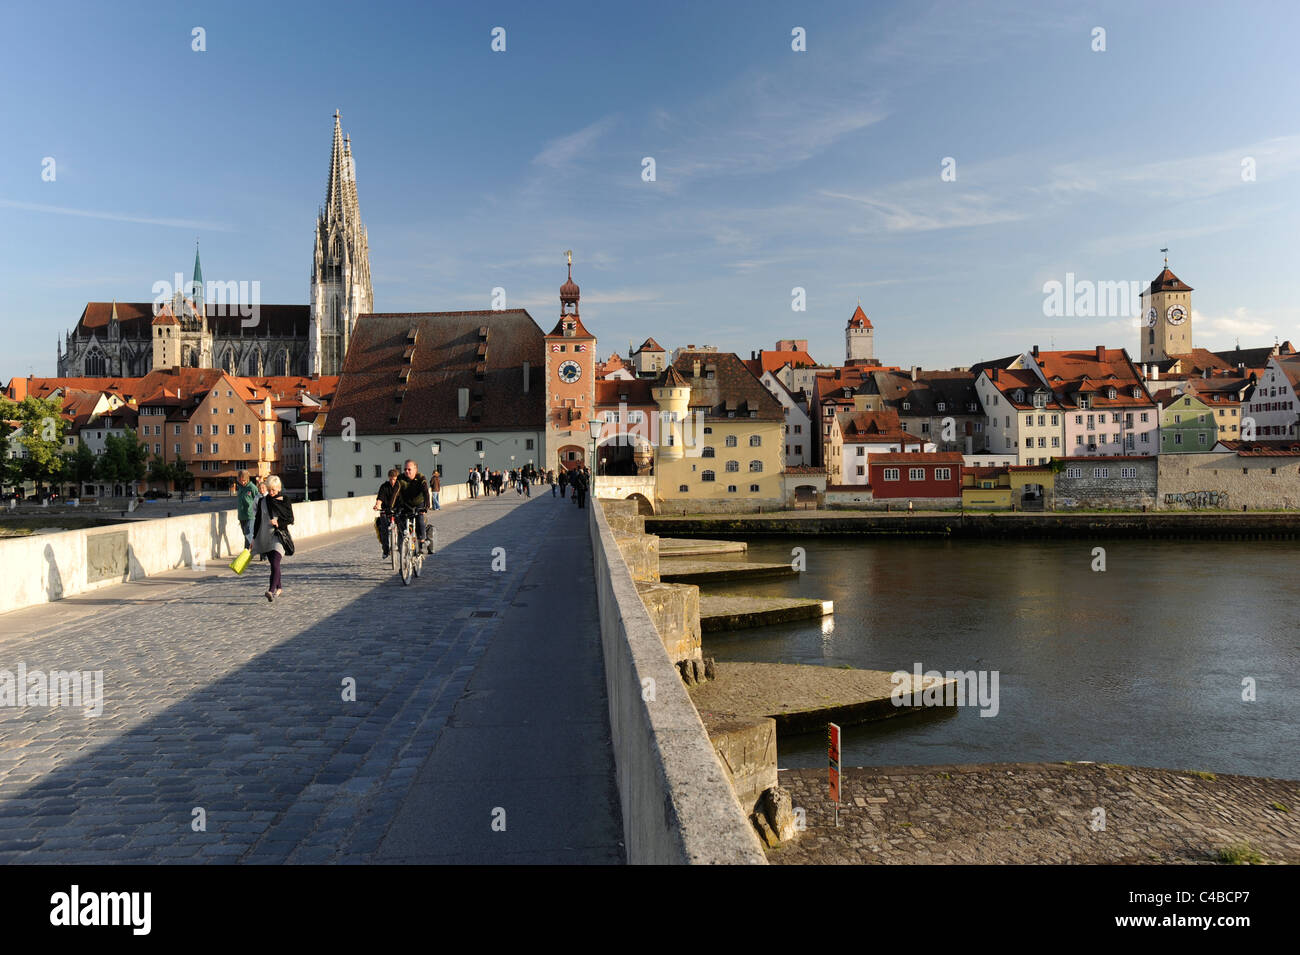 La antigua y famosa ciudad bávara de Regensburg, en Alemania, con el casco antiguo y las casas medievales Foto de stock